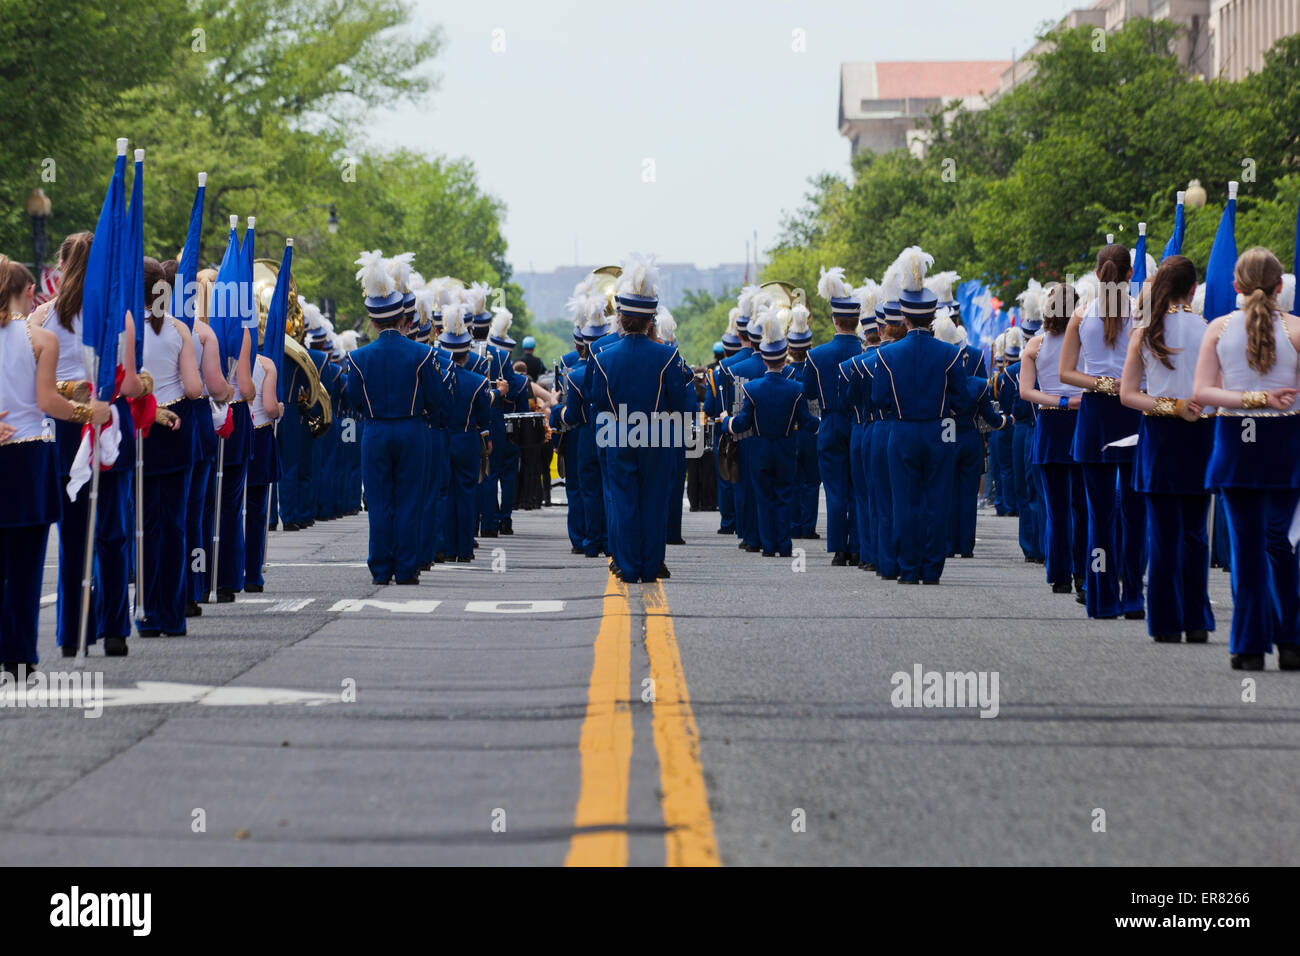 High school marching band at parade - Washington, DC USA Stock Photo